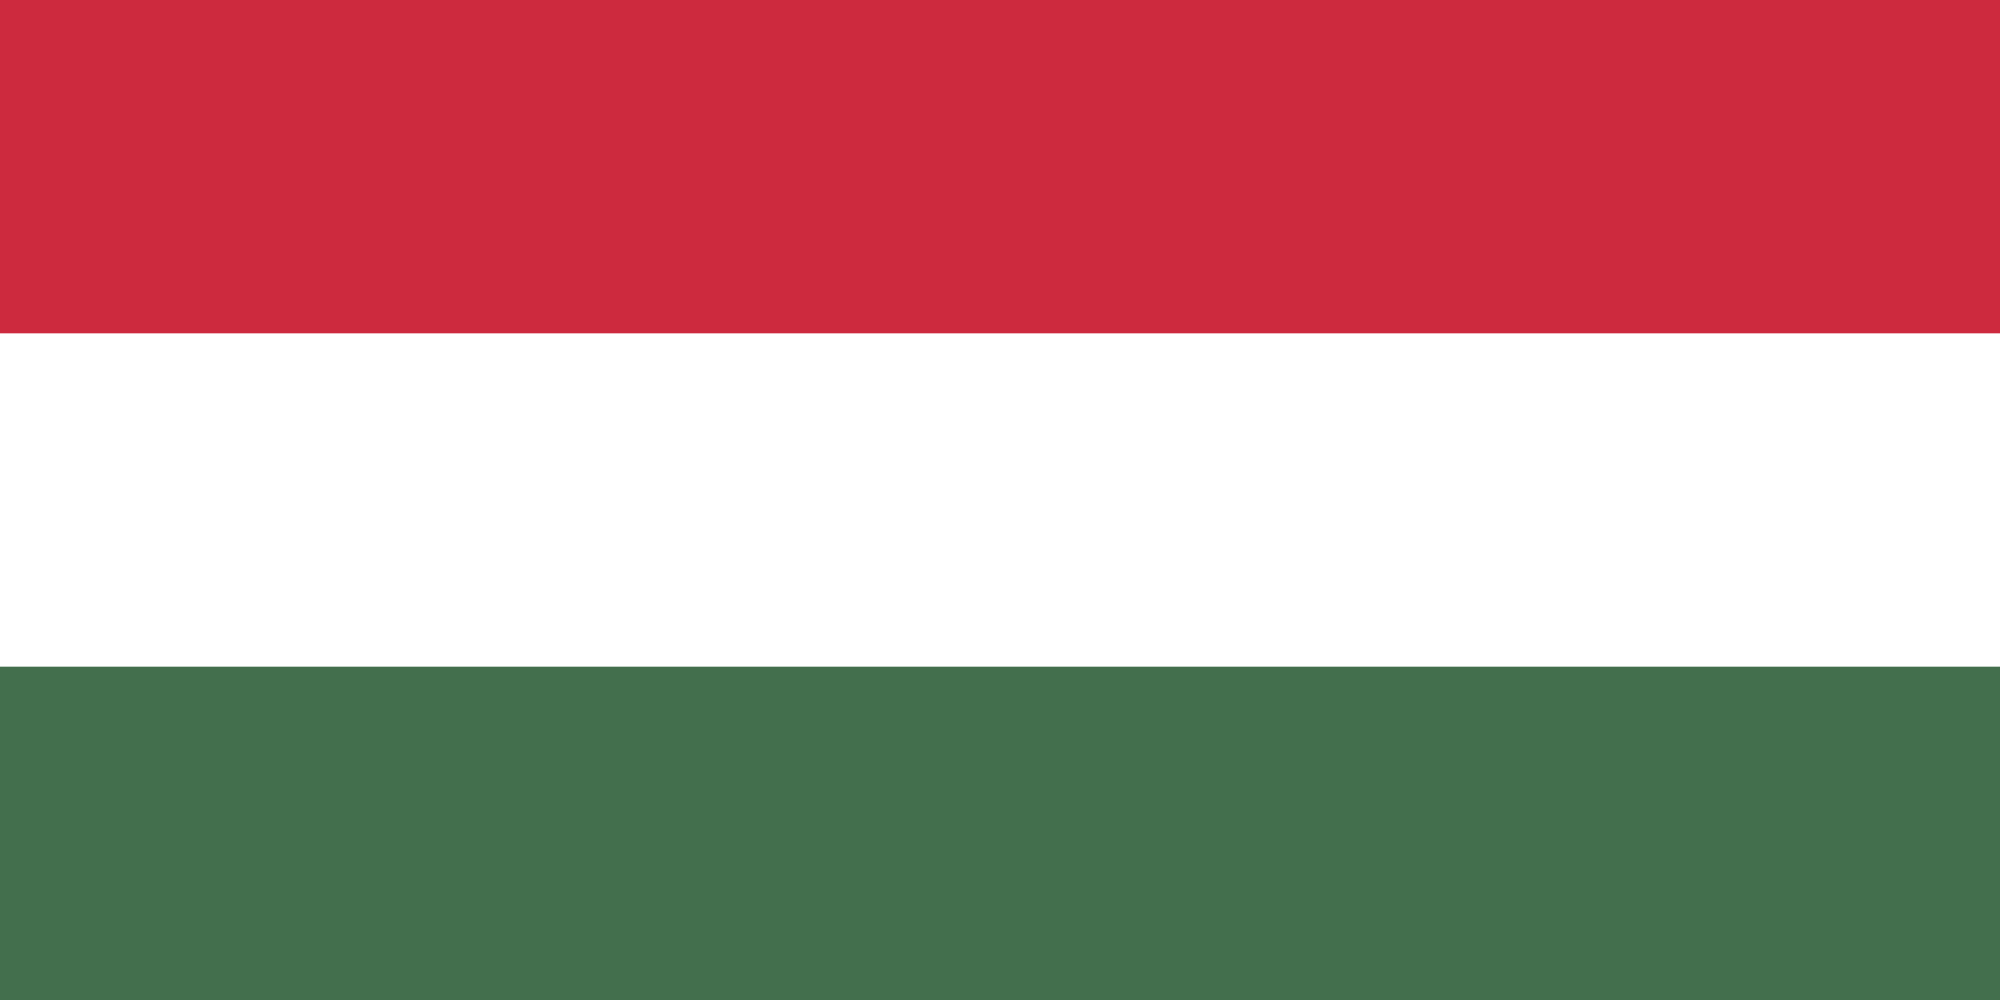 Hungary_flag